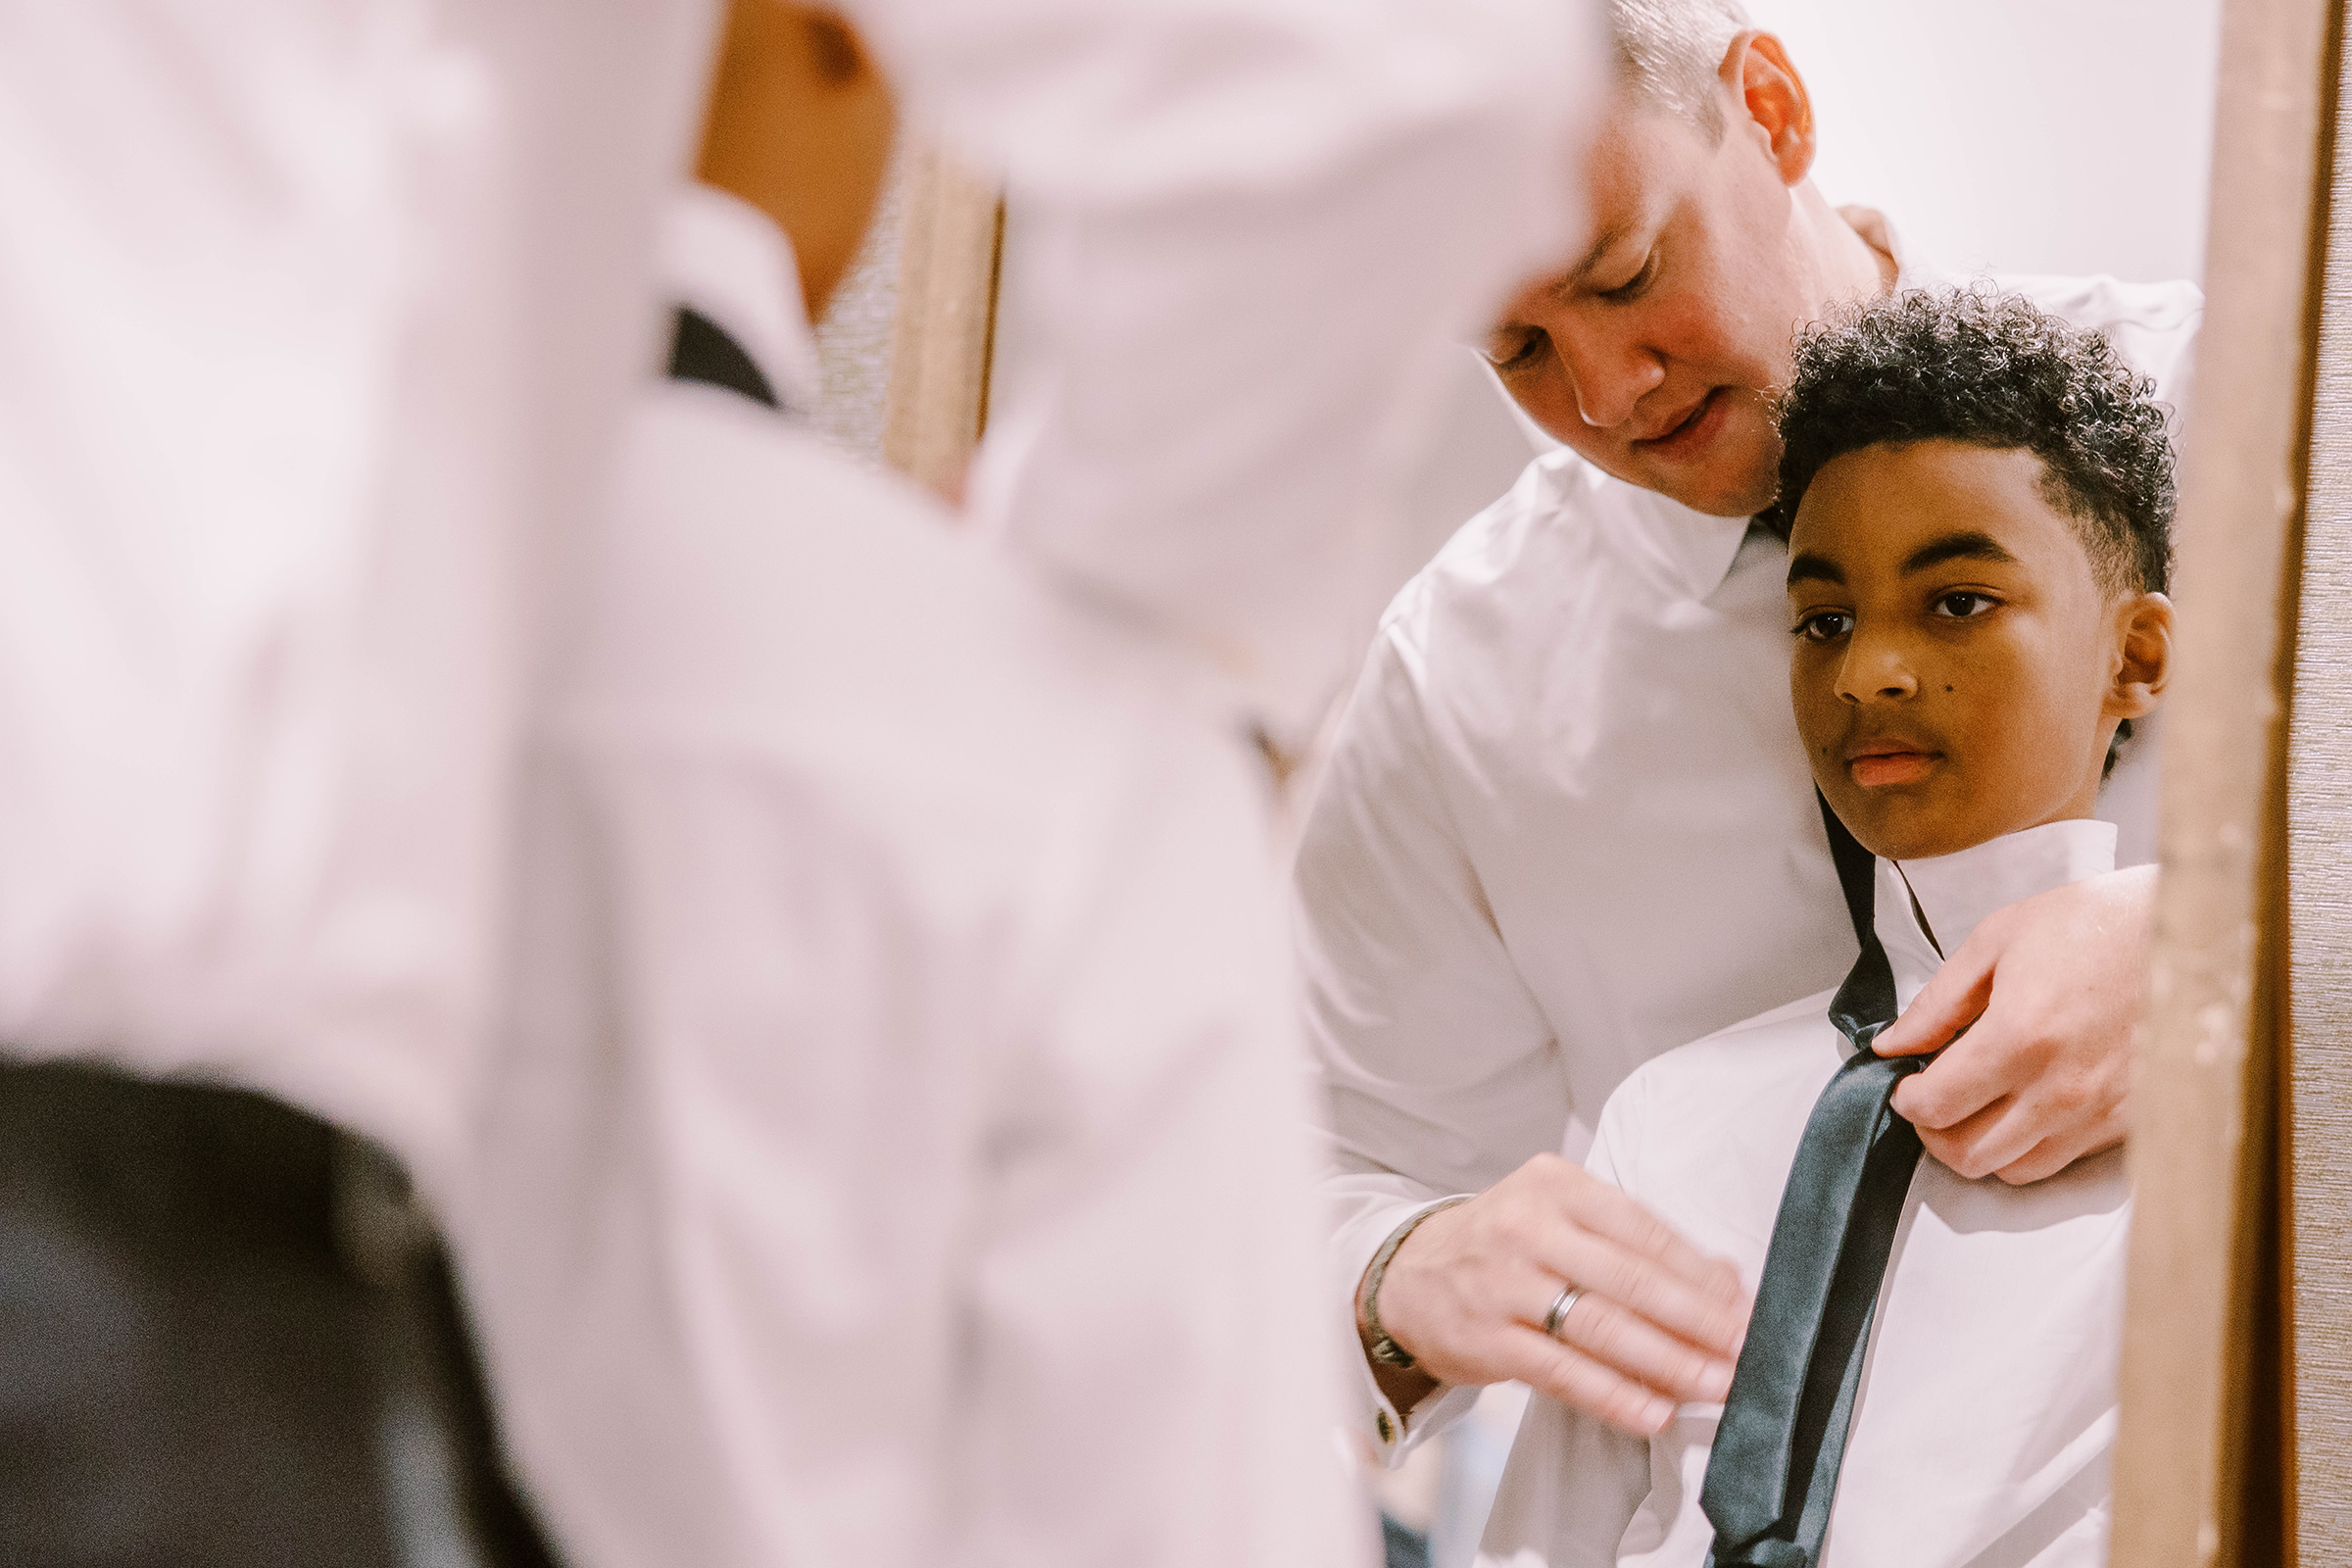 Groomsmen helps junior groomsmen tie his tie during getting ready